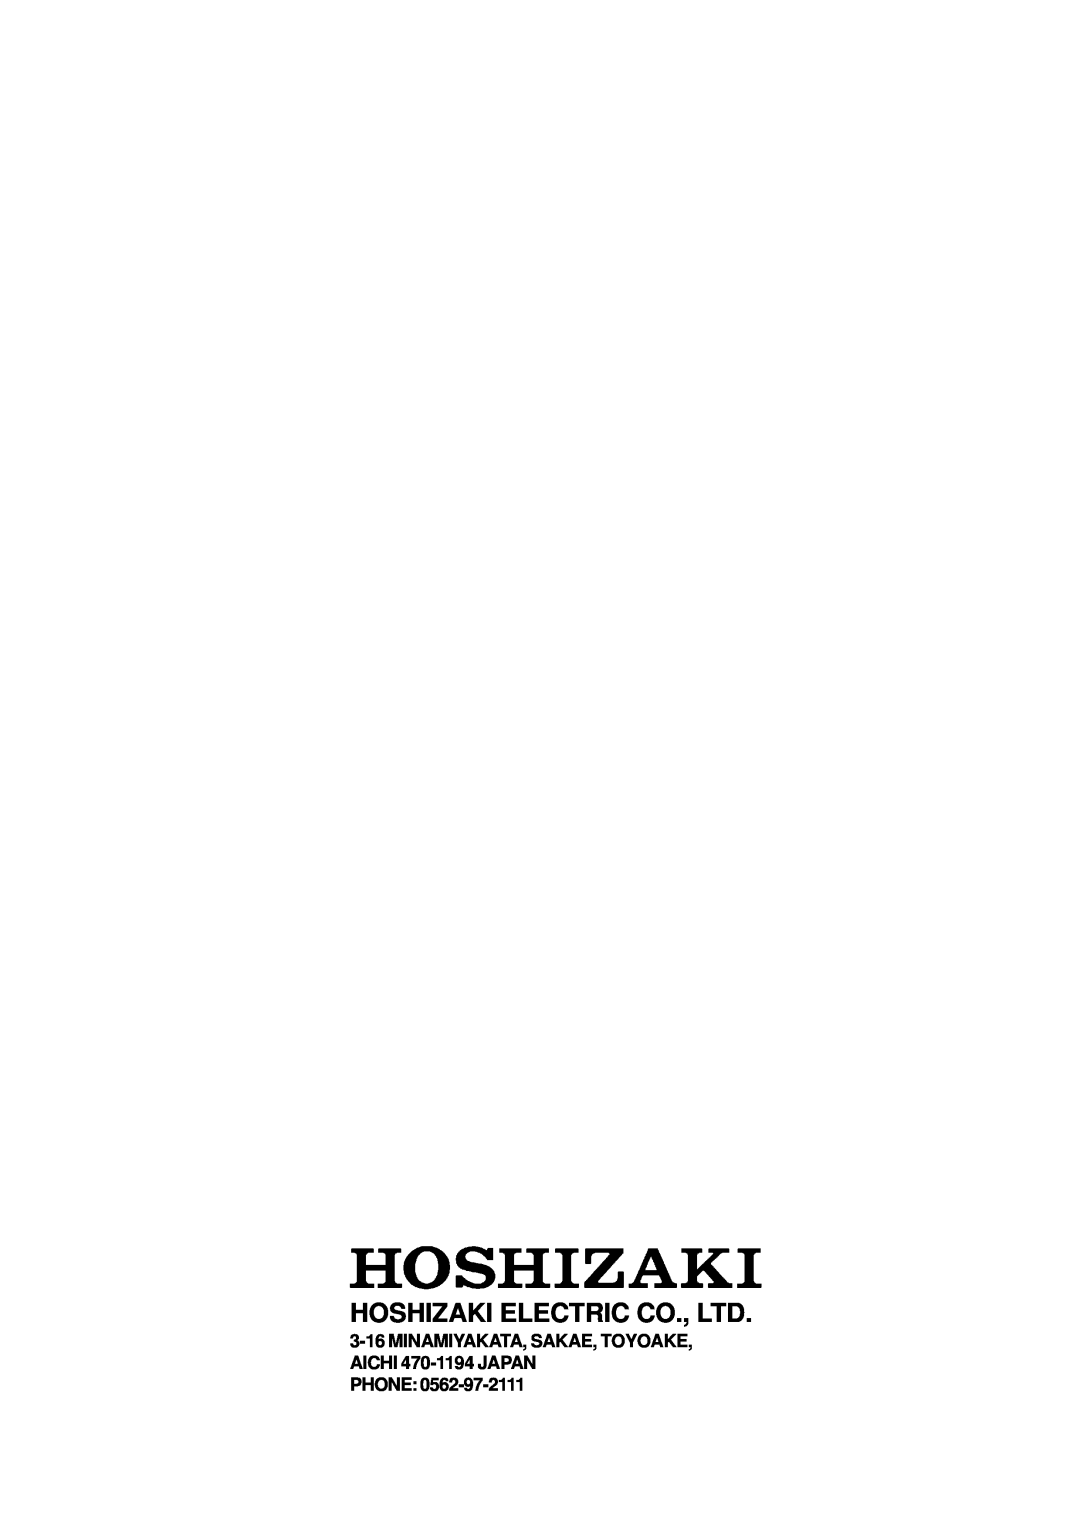 Hoshizaki ROX-20TA-U service manual MINAMIYAKATA, SAKAE, TOYOAKE, AICHI 470-1194 JAPAN PHONE 